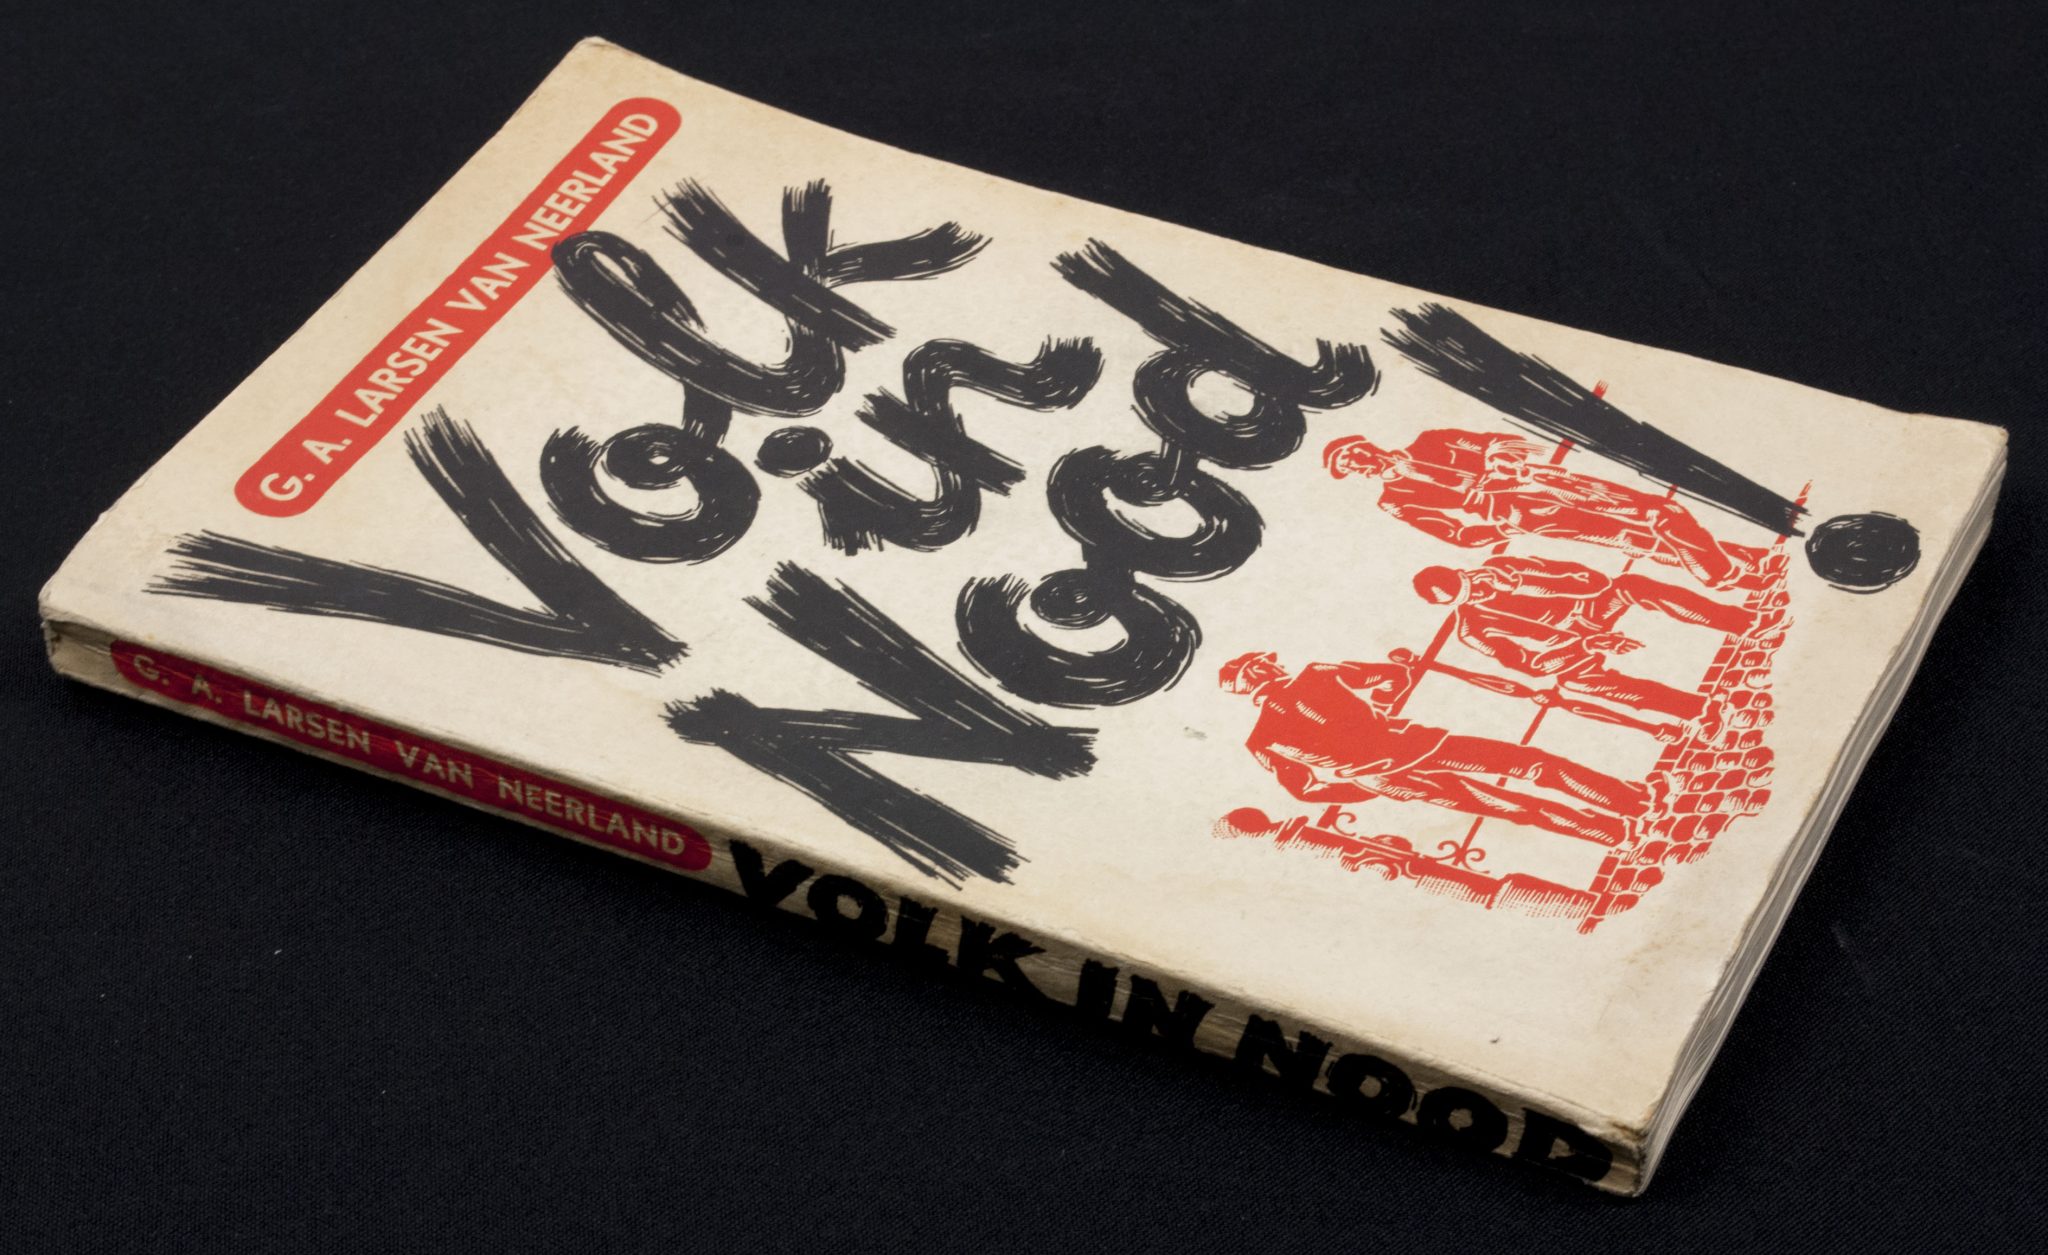 (Book) G.A. Larsen van neerland - Volk in Nood (1937)(Book) G.A. Larsen van neerland - Volk in Nood (1937)